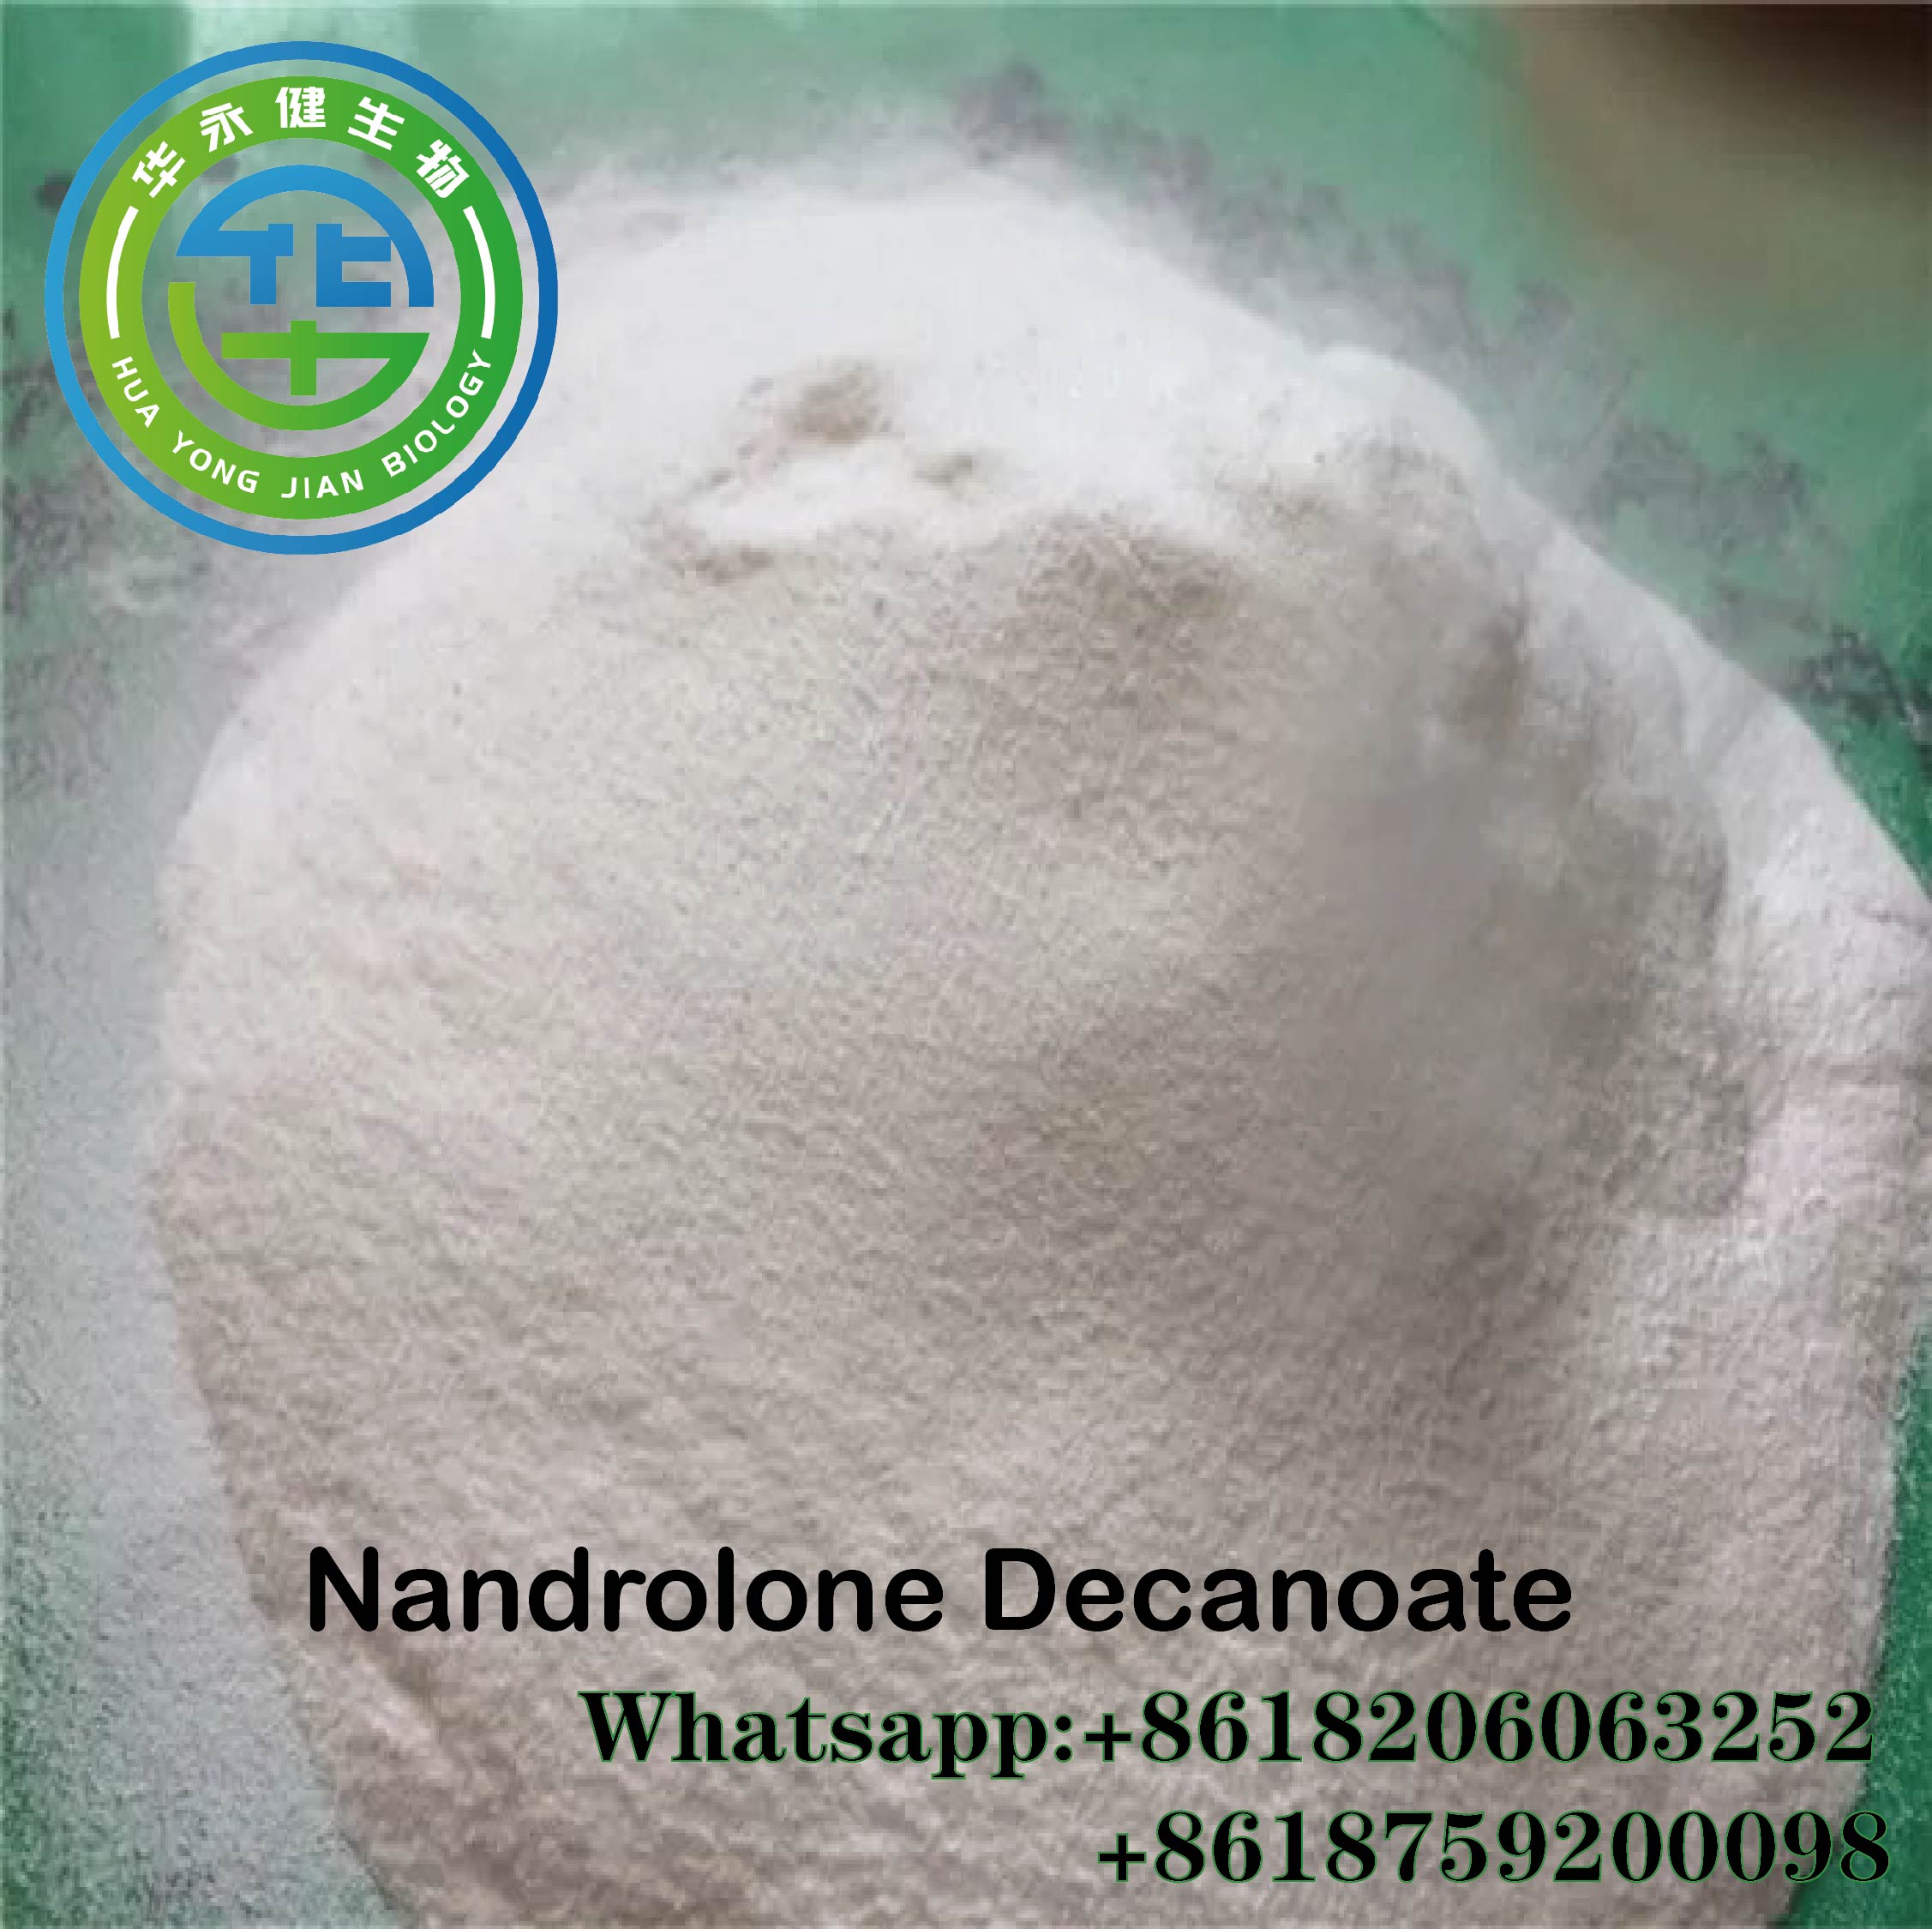 Nandrolona dekanoāta balts neapstrādāts pulveris Deca300 anaboliskais mestanolone muskuļu veidošanai CasNO.360-70-3/DECA piedāvātais attēls